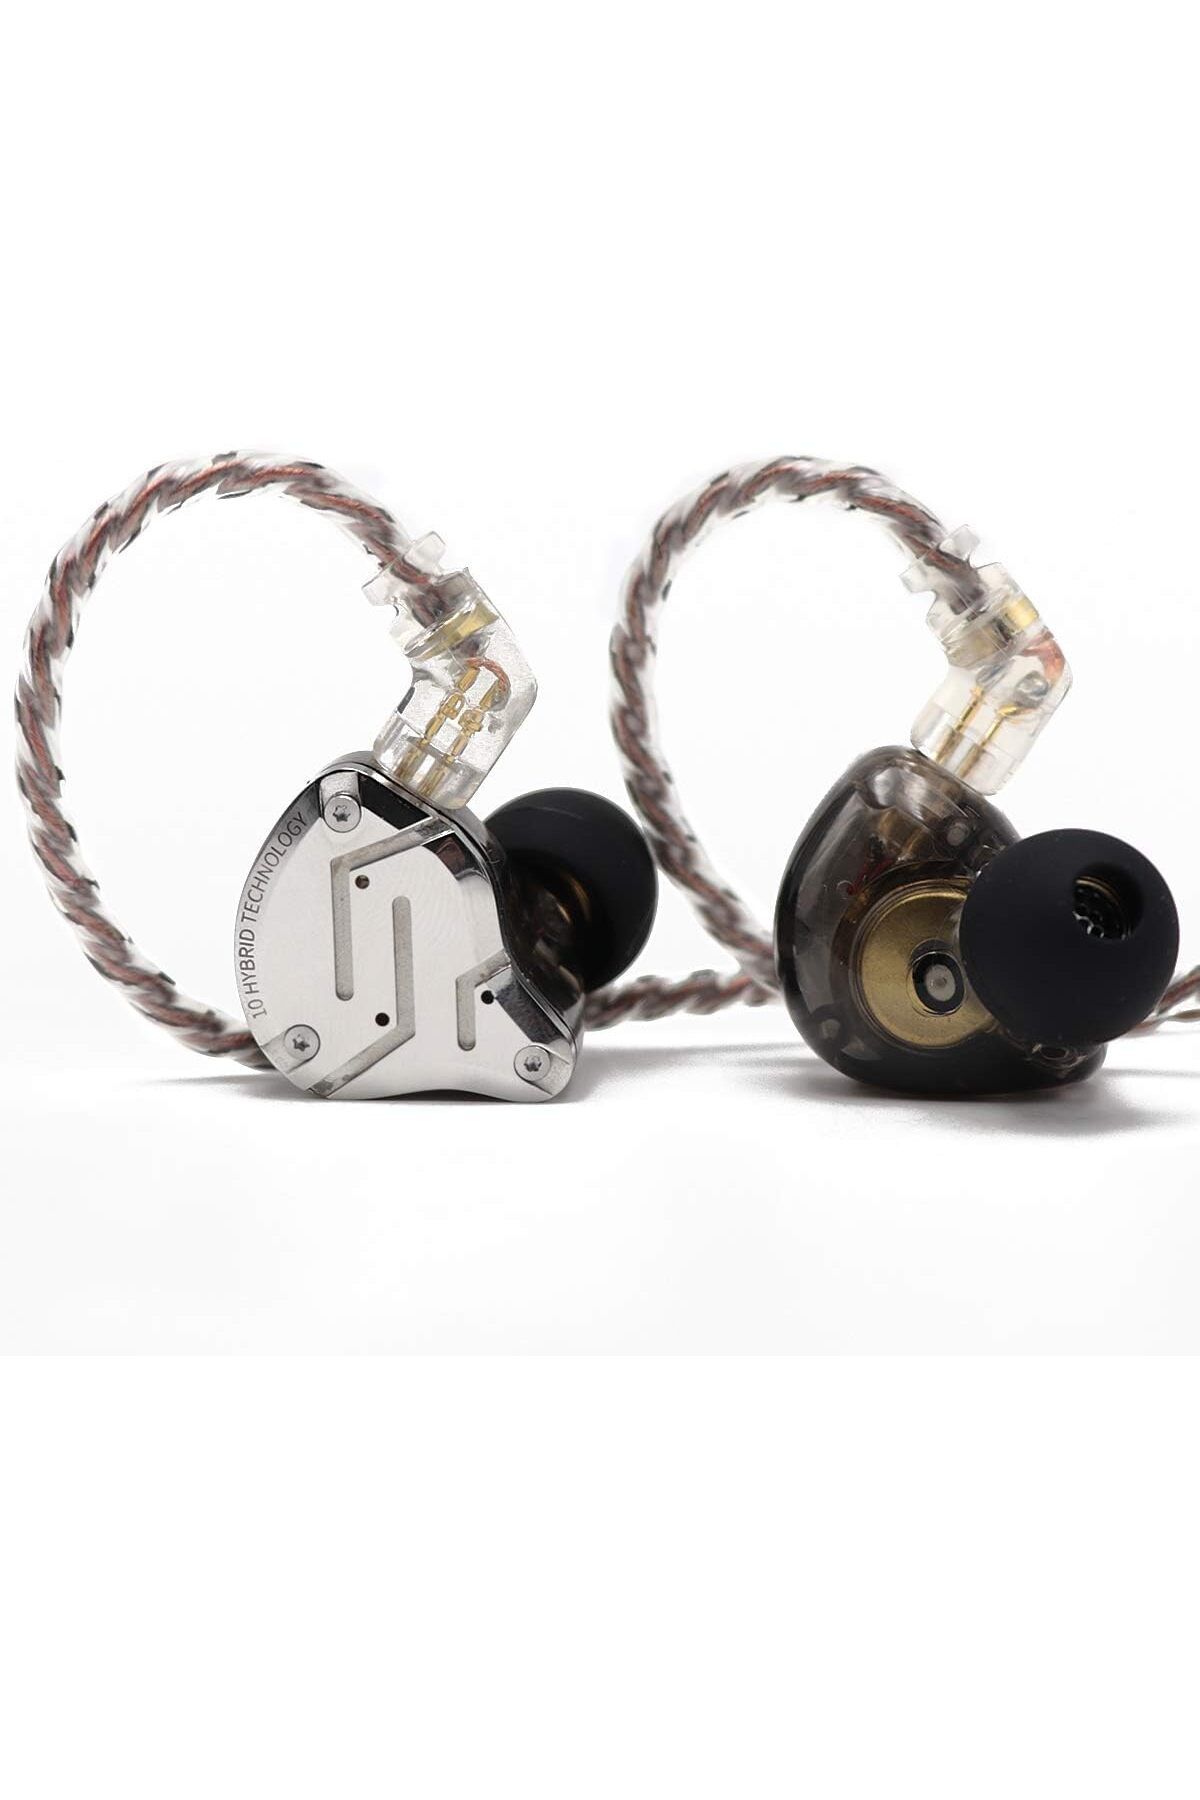 LINSOUL KZ ZS10 Pro 4BA + 1DD Hibrit Kulak İçi HiFi Metal Kulaklık Paslanmaz Çelik Ön Plakalı